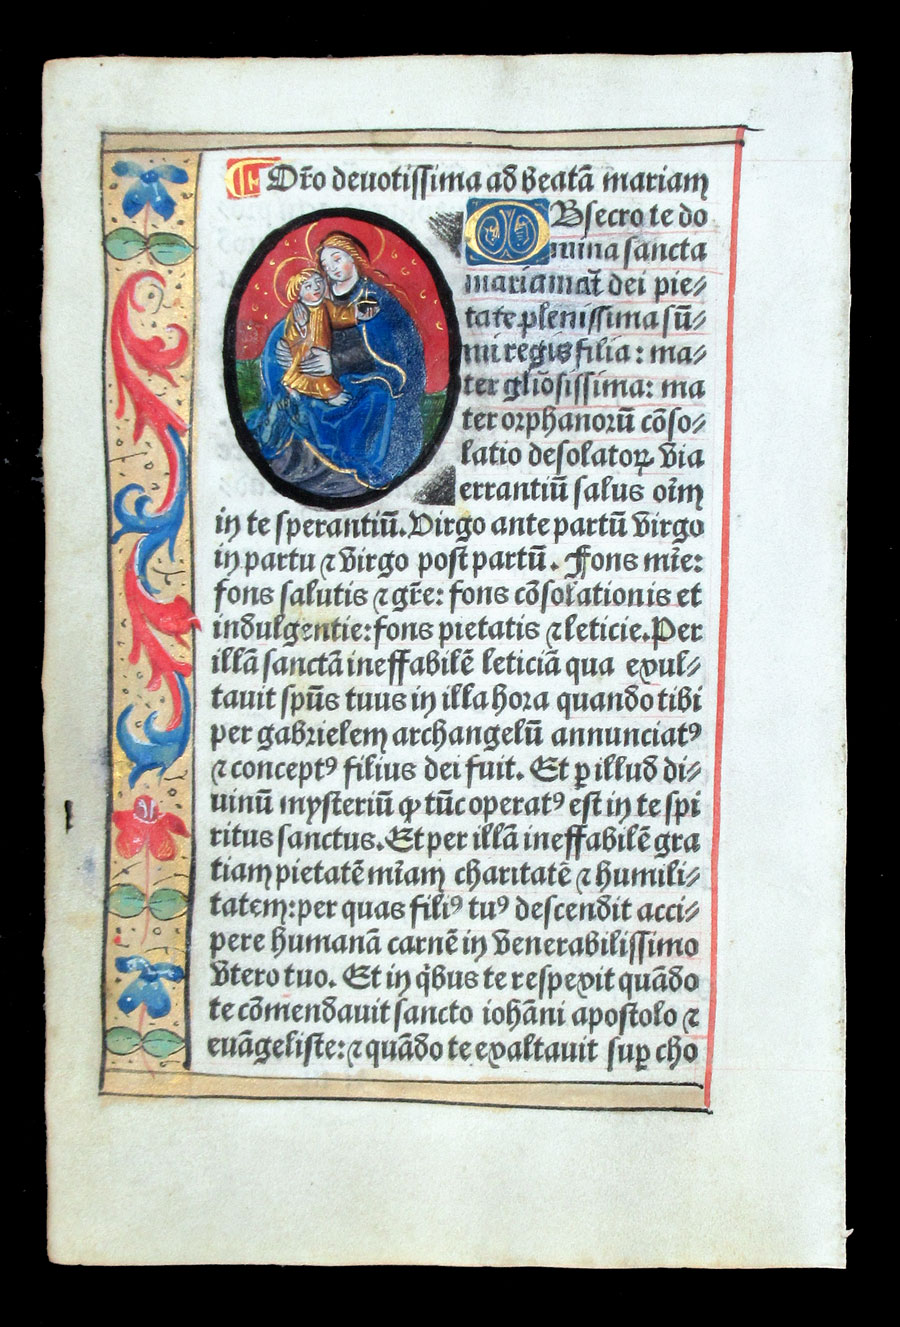 c 1532 Book of Hours Leaf - Madonna & Child